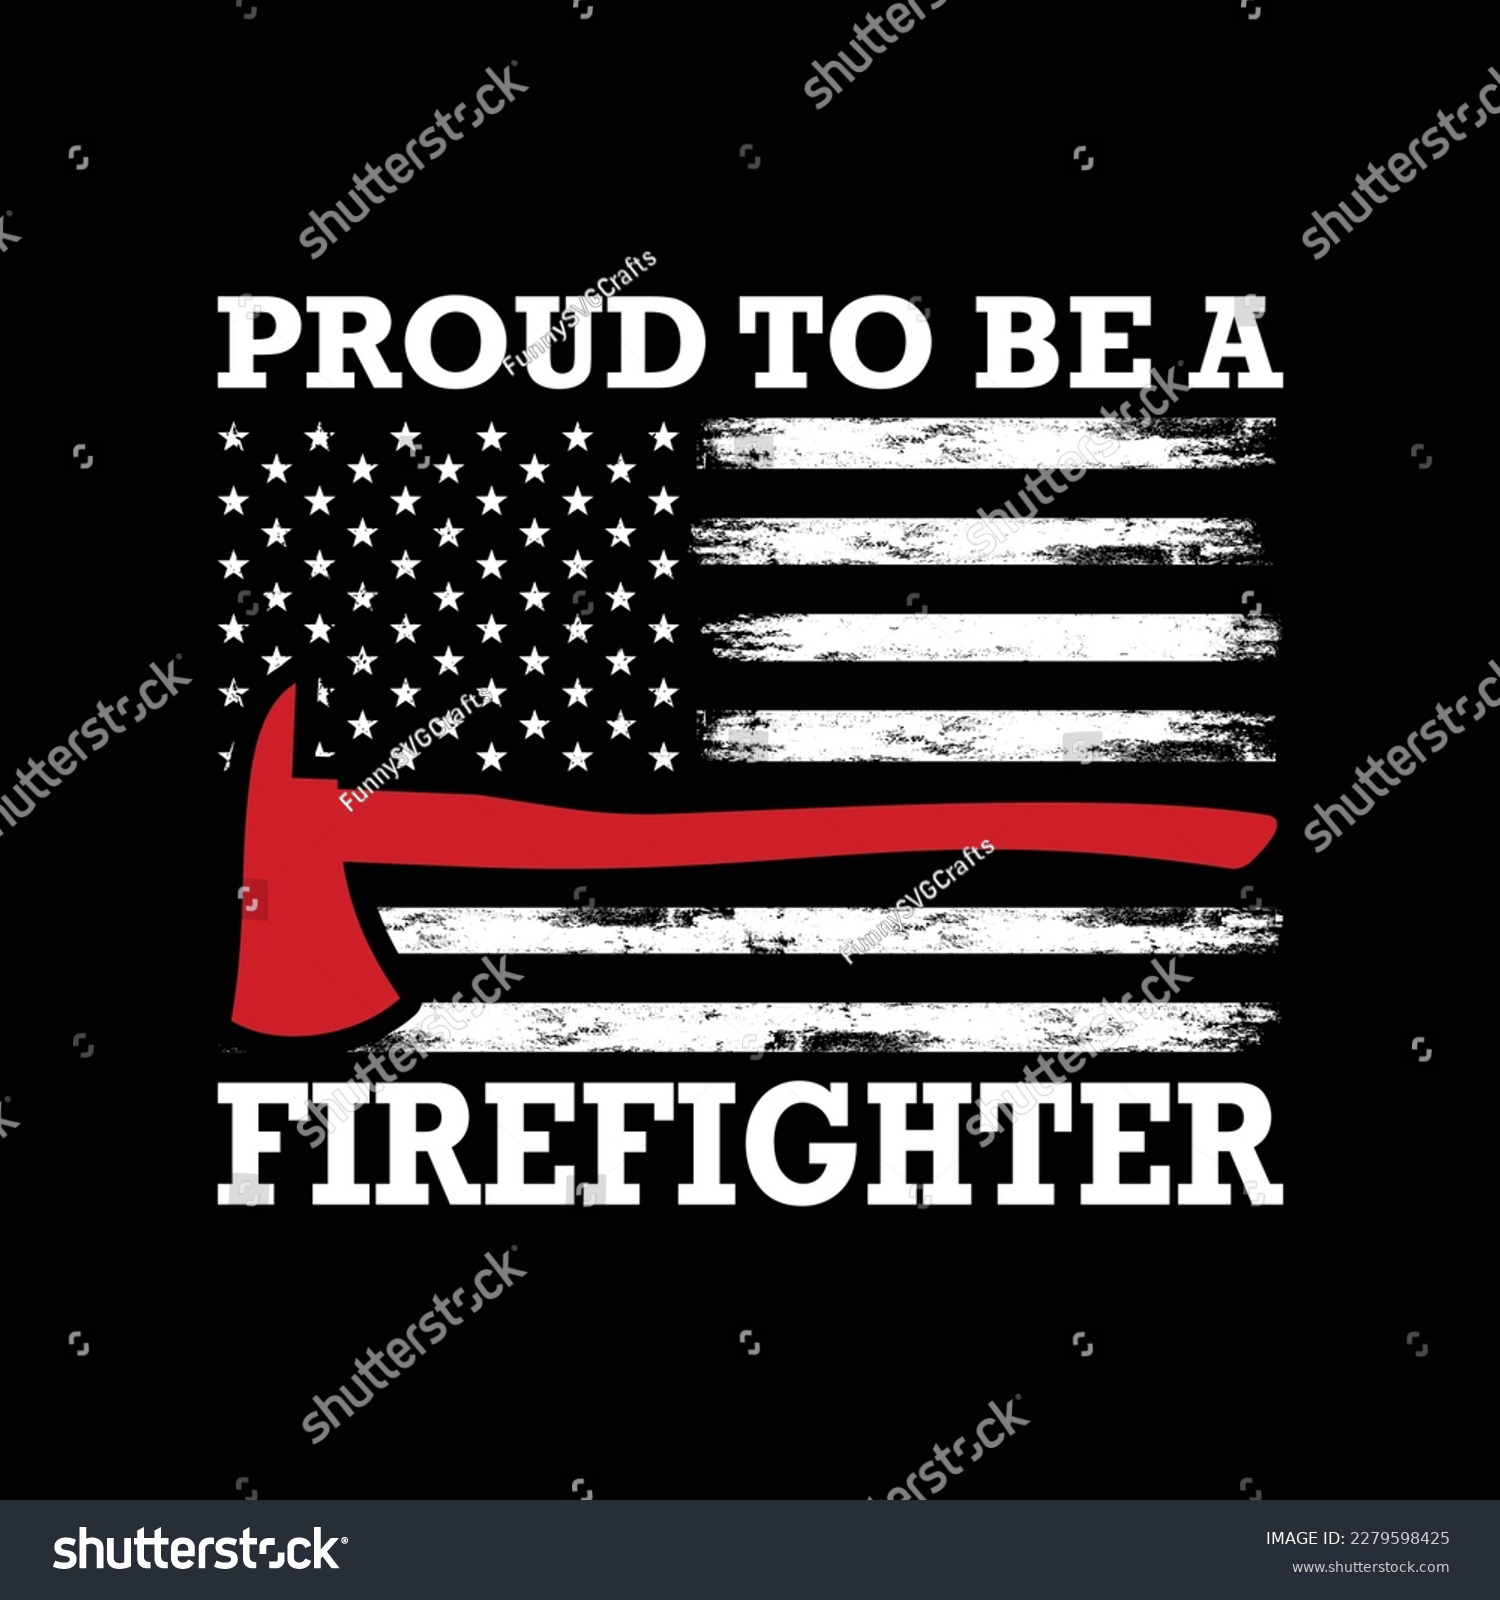 SVG of Proud to be a Firefighter Shirt, firefighter shirt, firefighter flag, Firefighter svg, USA Flag, fireman, fire svg